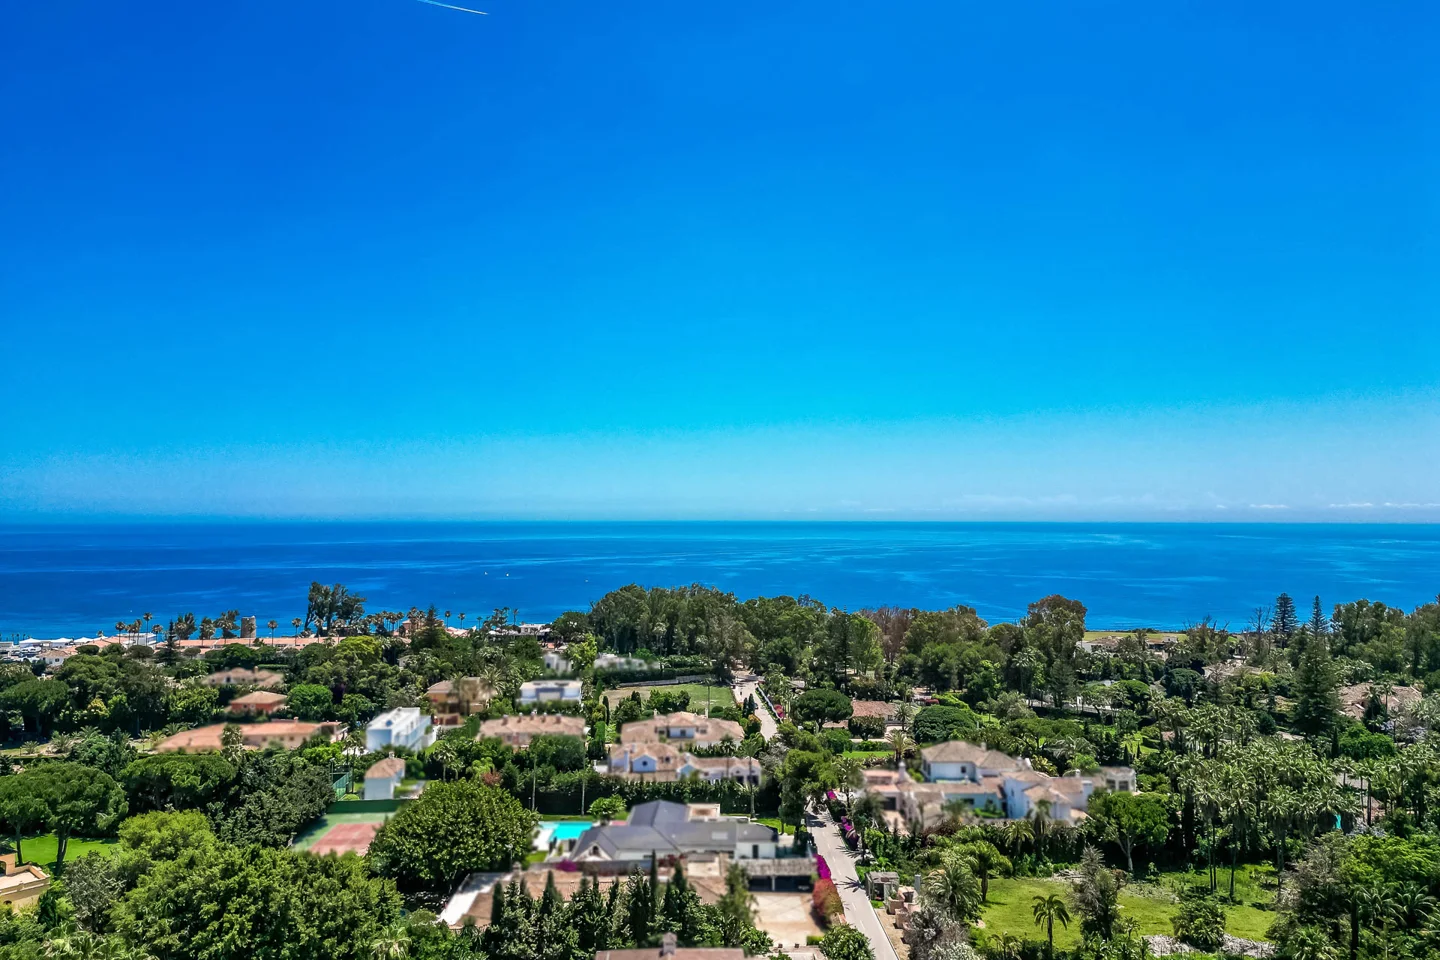 Fantastisches Guadalmina Strandseite Grundstück mit einem Villaprojekt in einer hoch angesehenen Wohnanlage in Marbella.